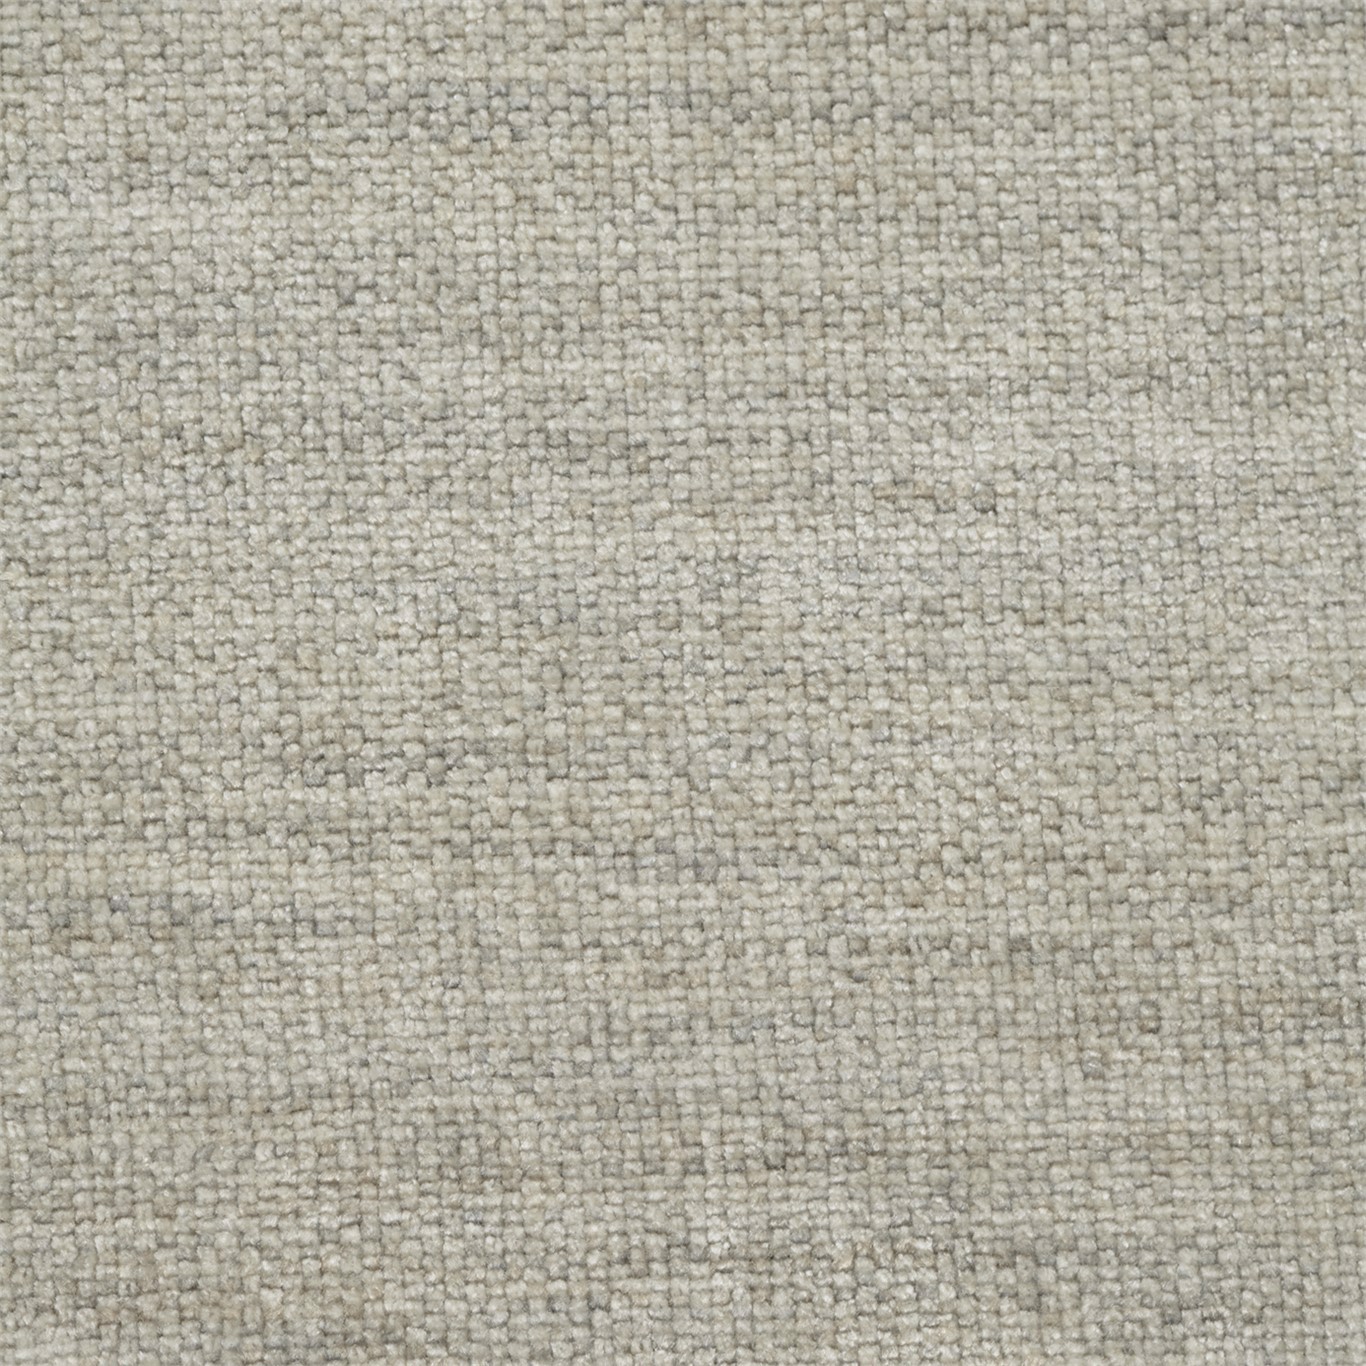 Moorbank Birch Fabric by SAN